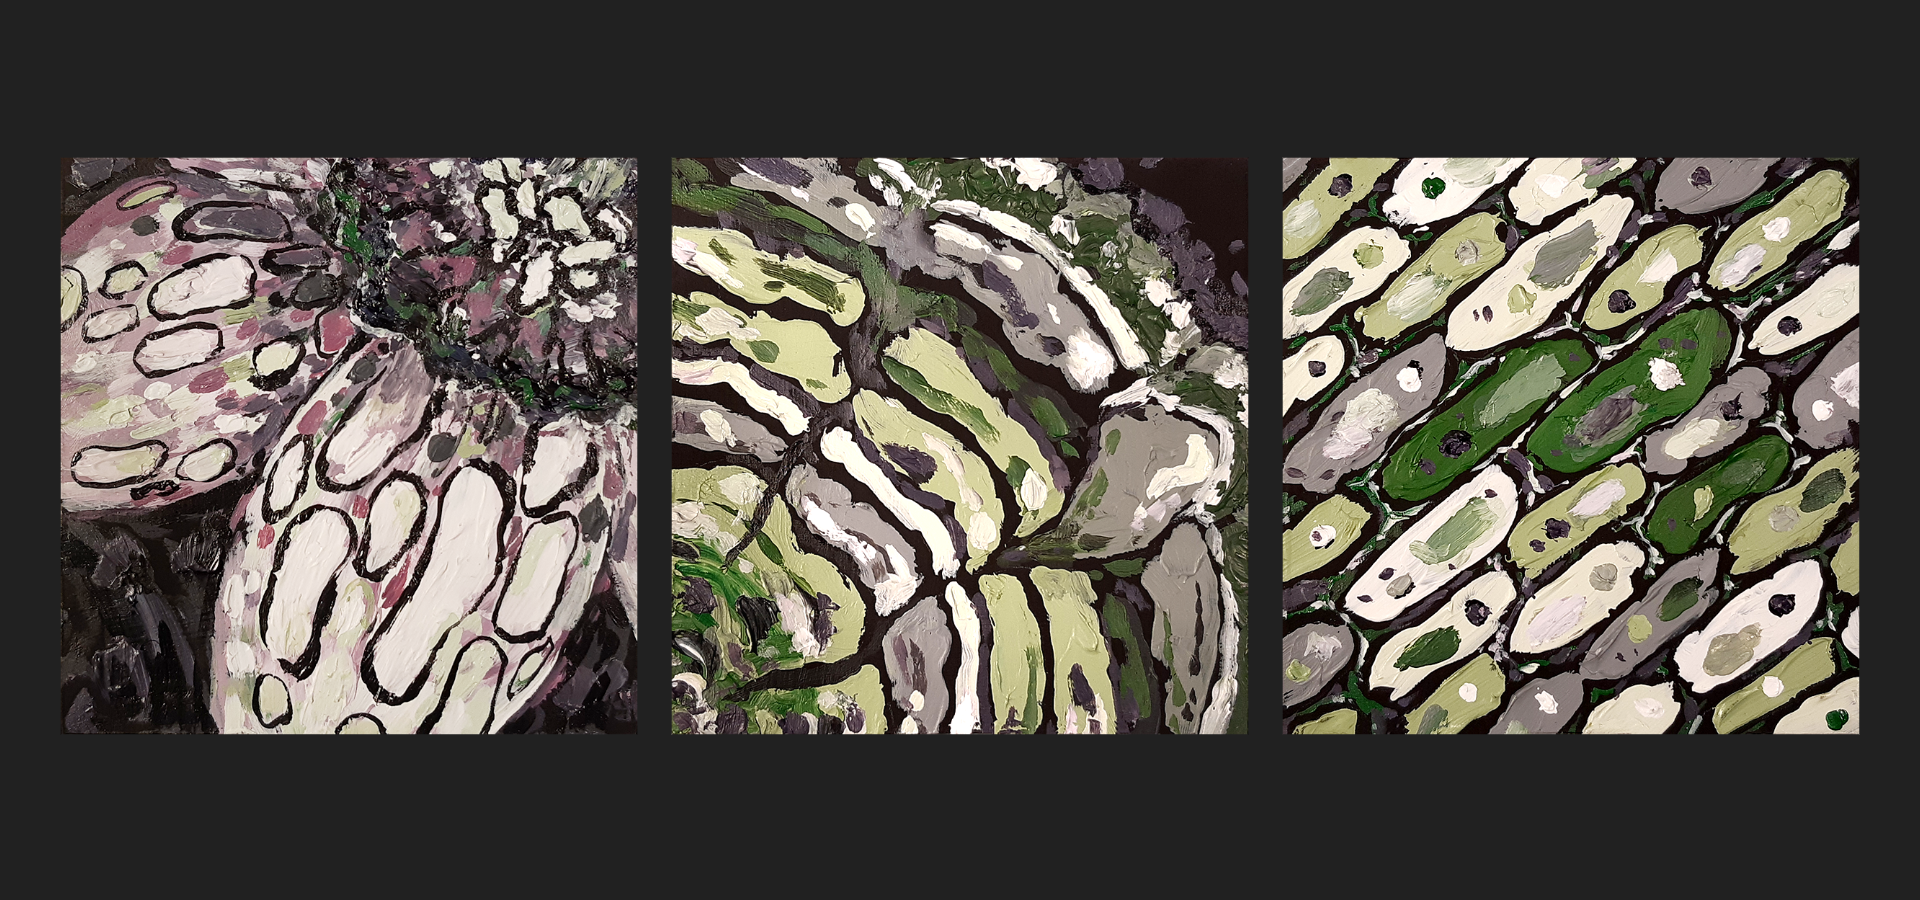 Tryptique de peintures carrées mélangeant les couleurs des drapeaux ace et aro (vert, blanc, violet, noir) dans des motifs ovales. La première représente deux jonquilles en gros plan. La deuxième représente les cernes d'une souche d'arbre en gros plan. La troisième représente des cellules alignées en diagonale.